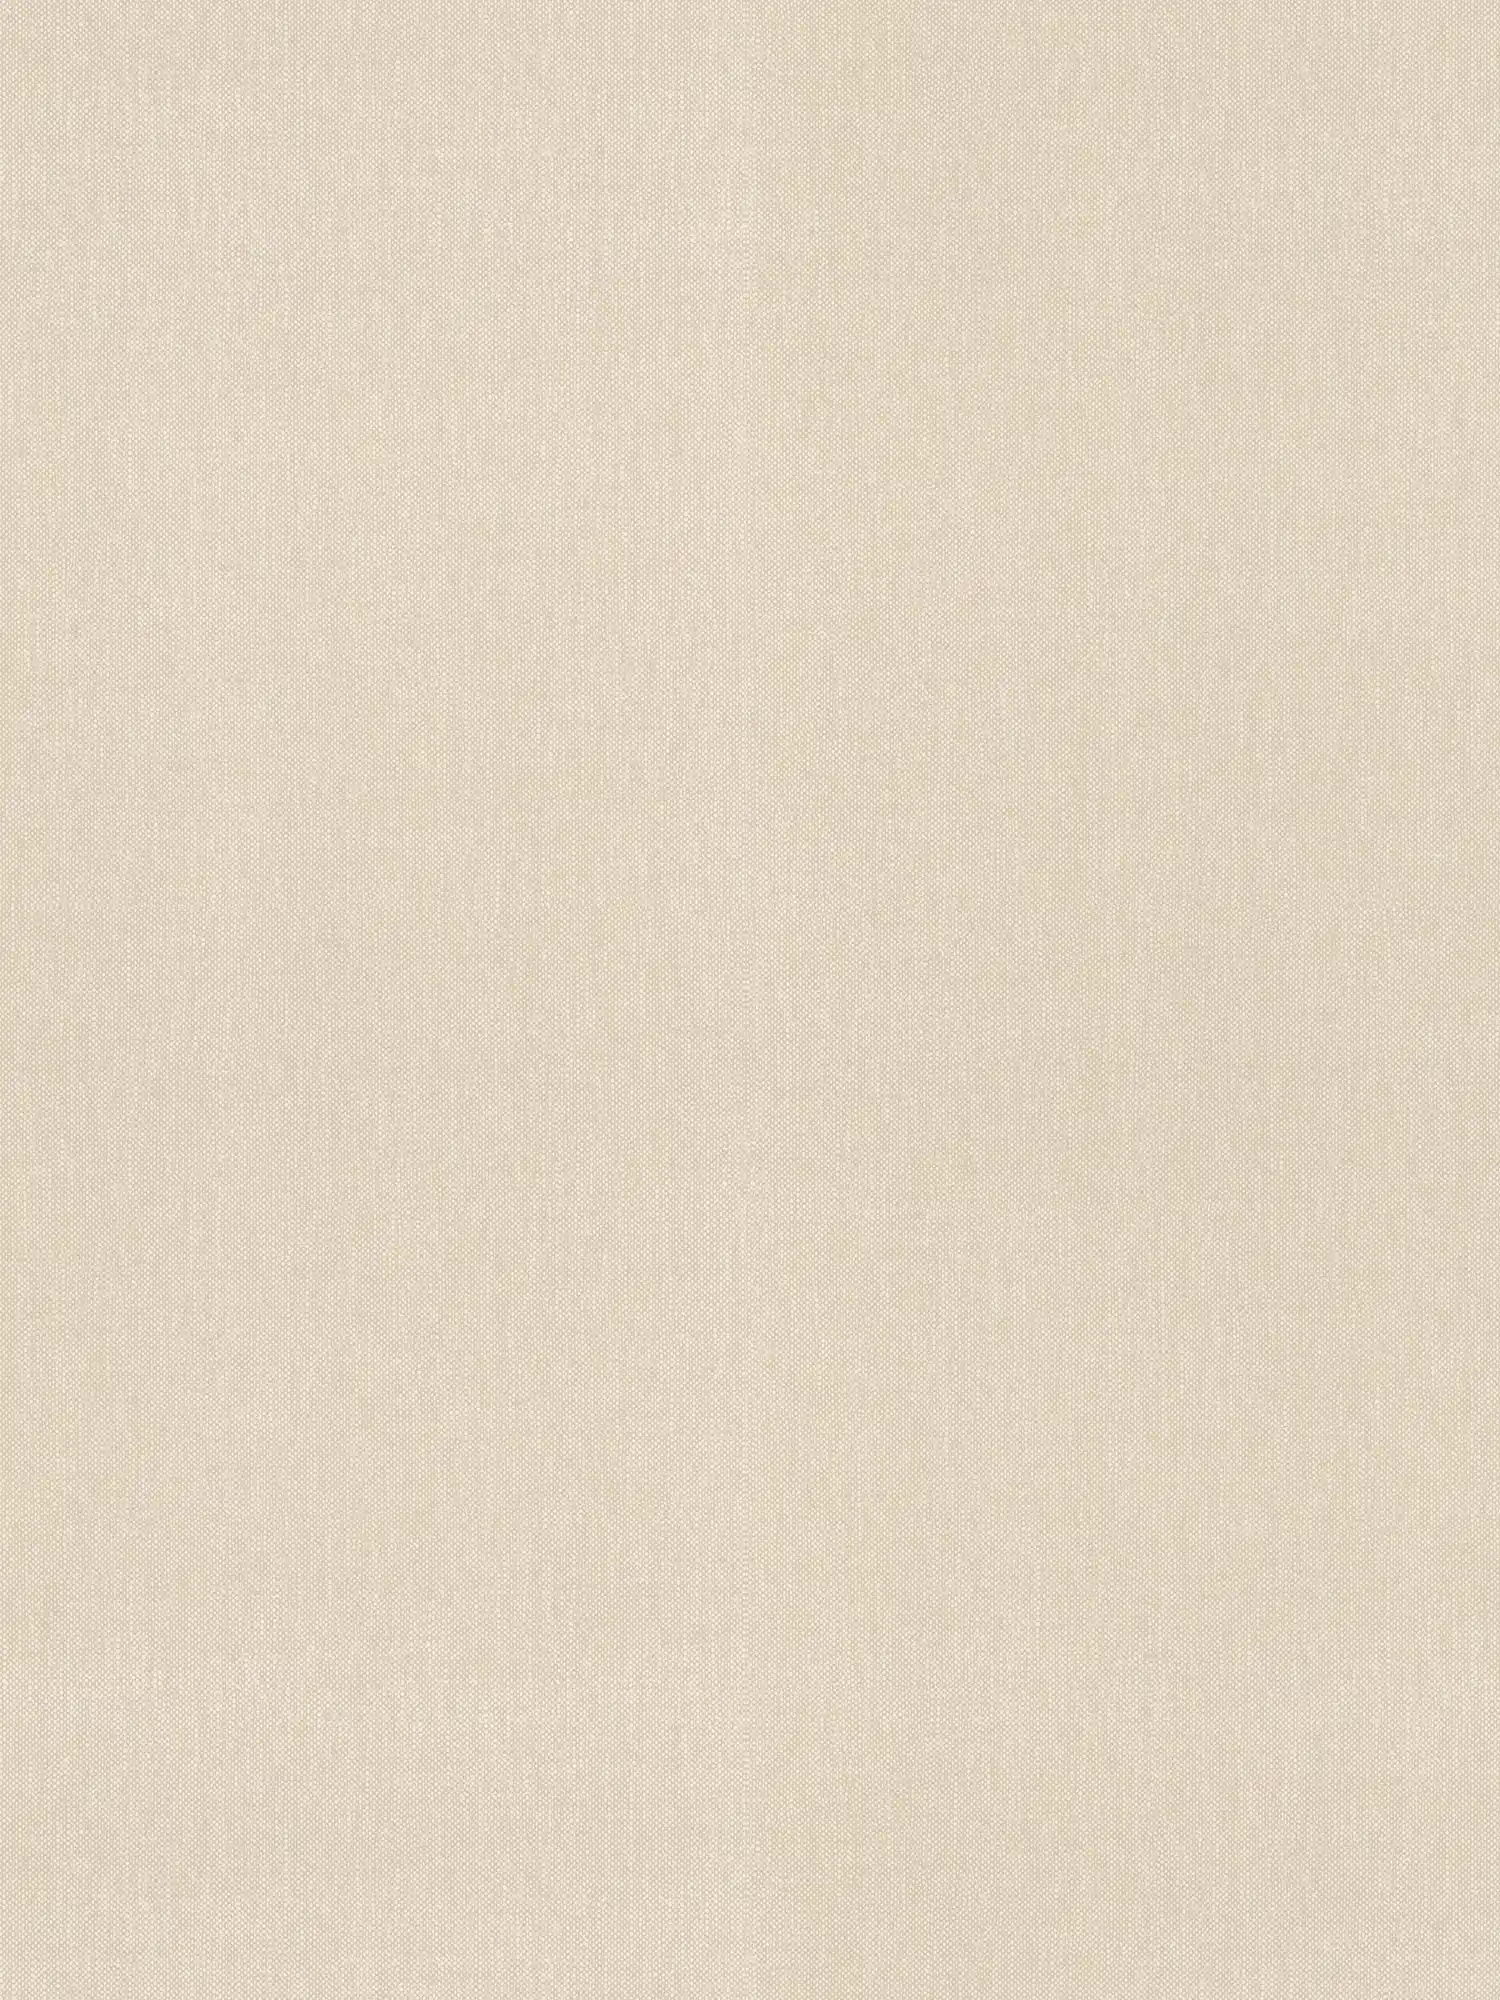 Papier peint uni beige avec structure textile, style maison de campagne
